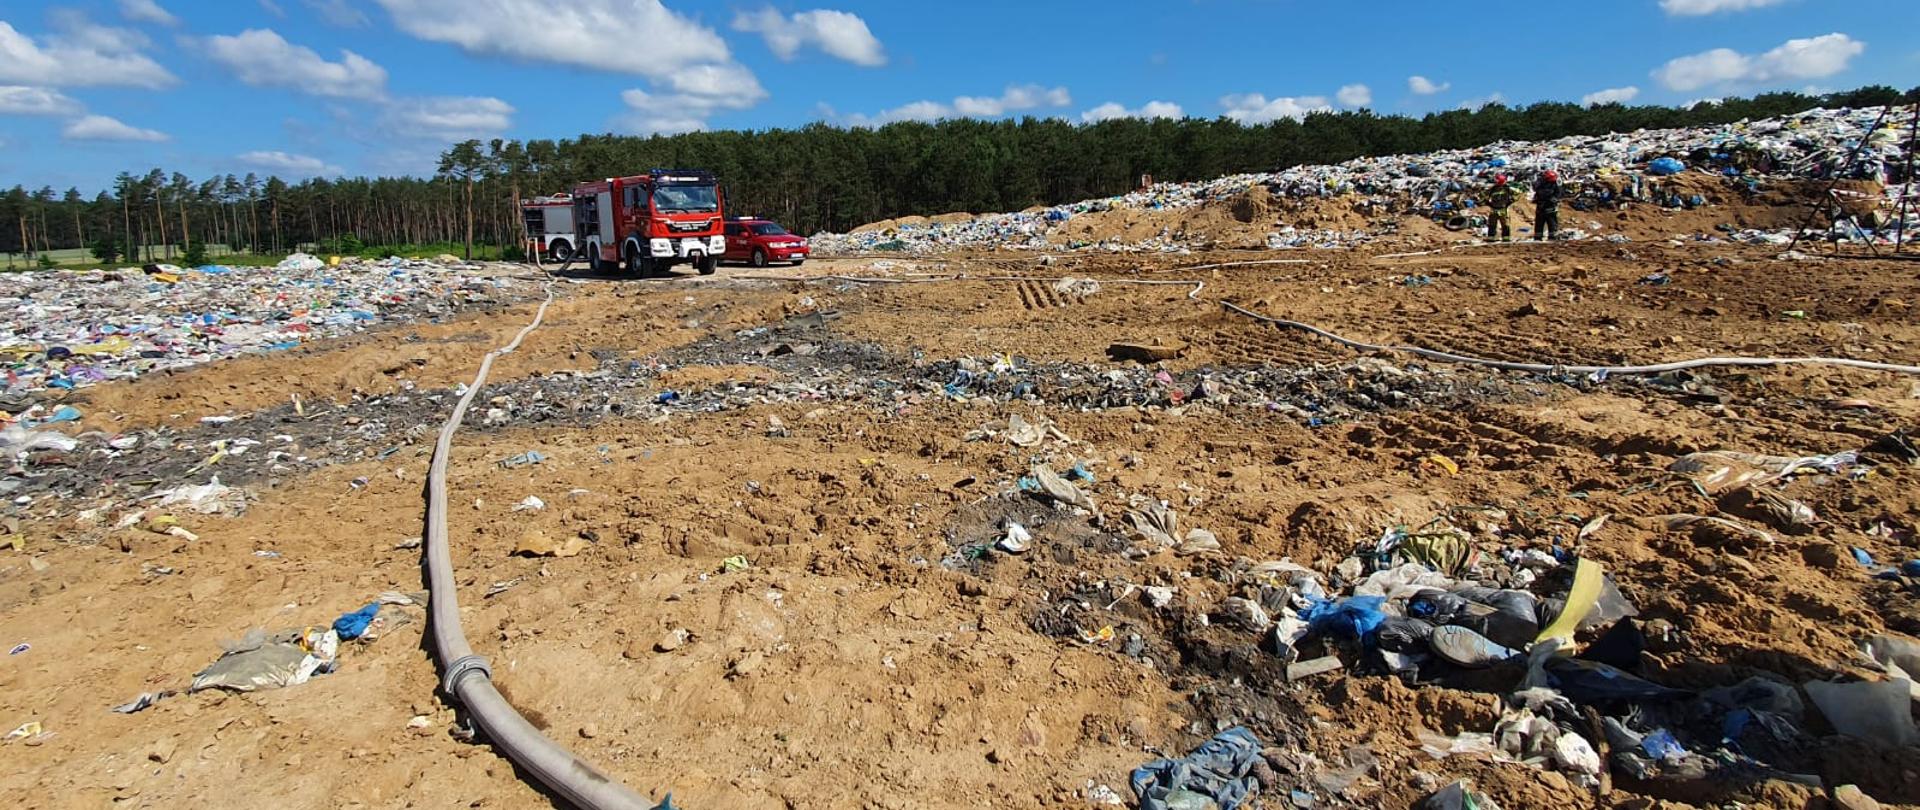 Składowisko odpadów, widoczne składowane śmieci, w oddali wóz strażacki. Na pierwszym planie wąż strażacki. 